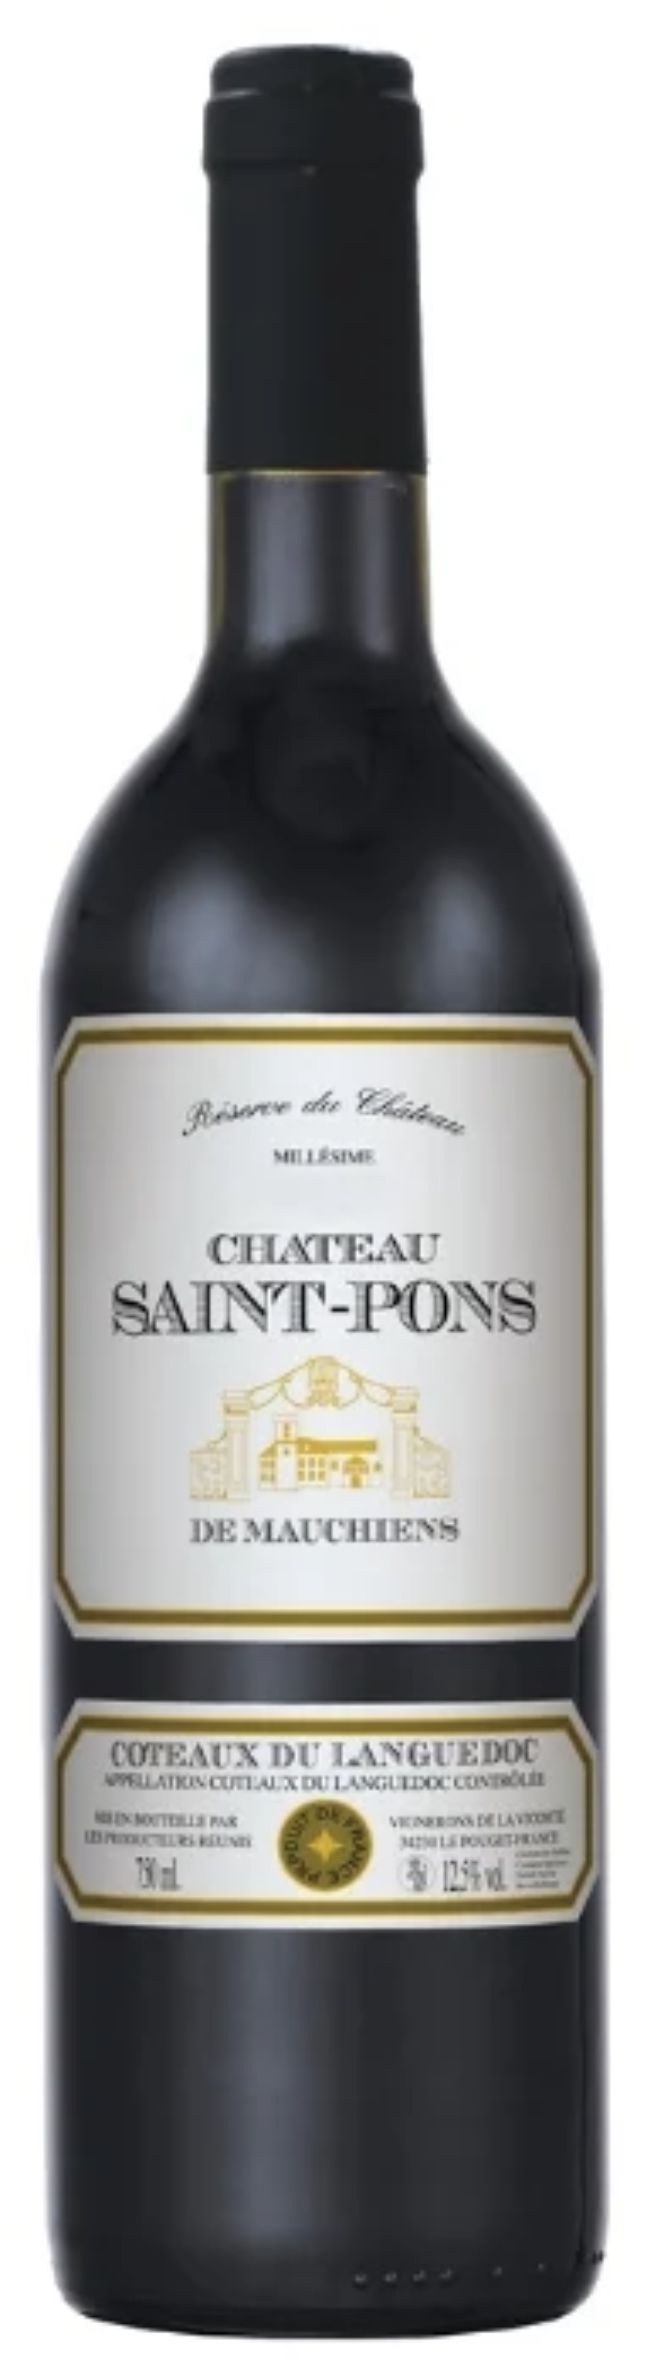 Шато сен. Вино Шато сен понс де Мошьен кото. Chateau Saint-Pons de Mauchiens красное сухое. Вино Шато сен понс кото дю. Шато сен-понс де Мошьен кото дю Лангедок сух кр.